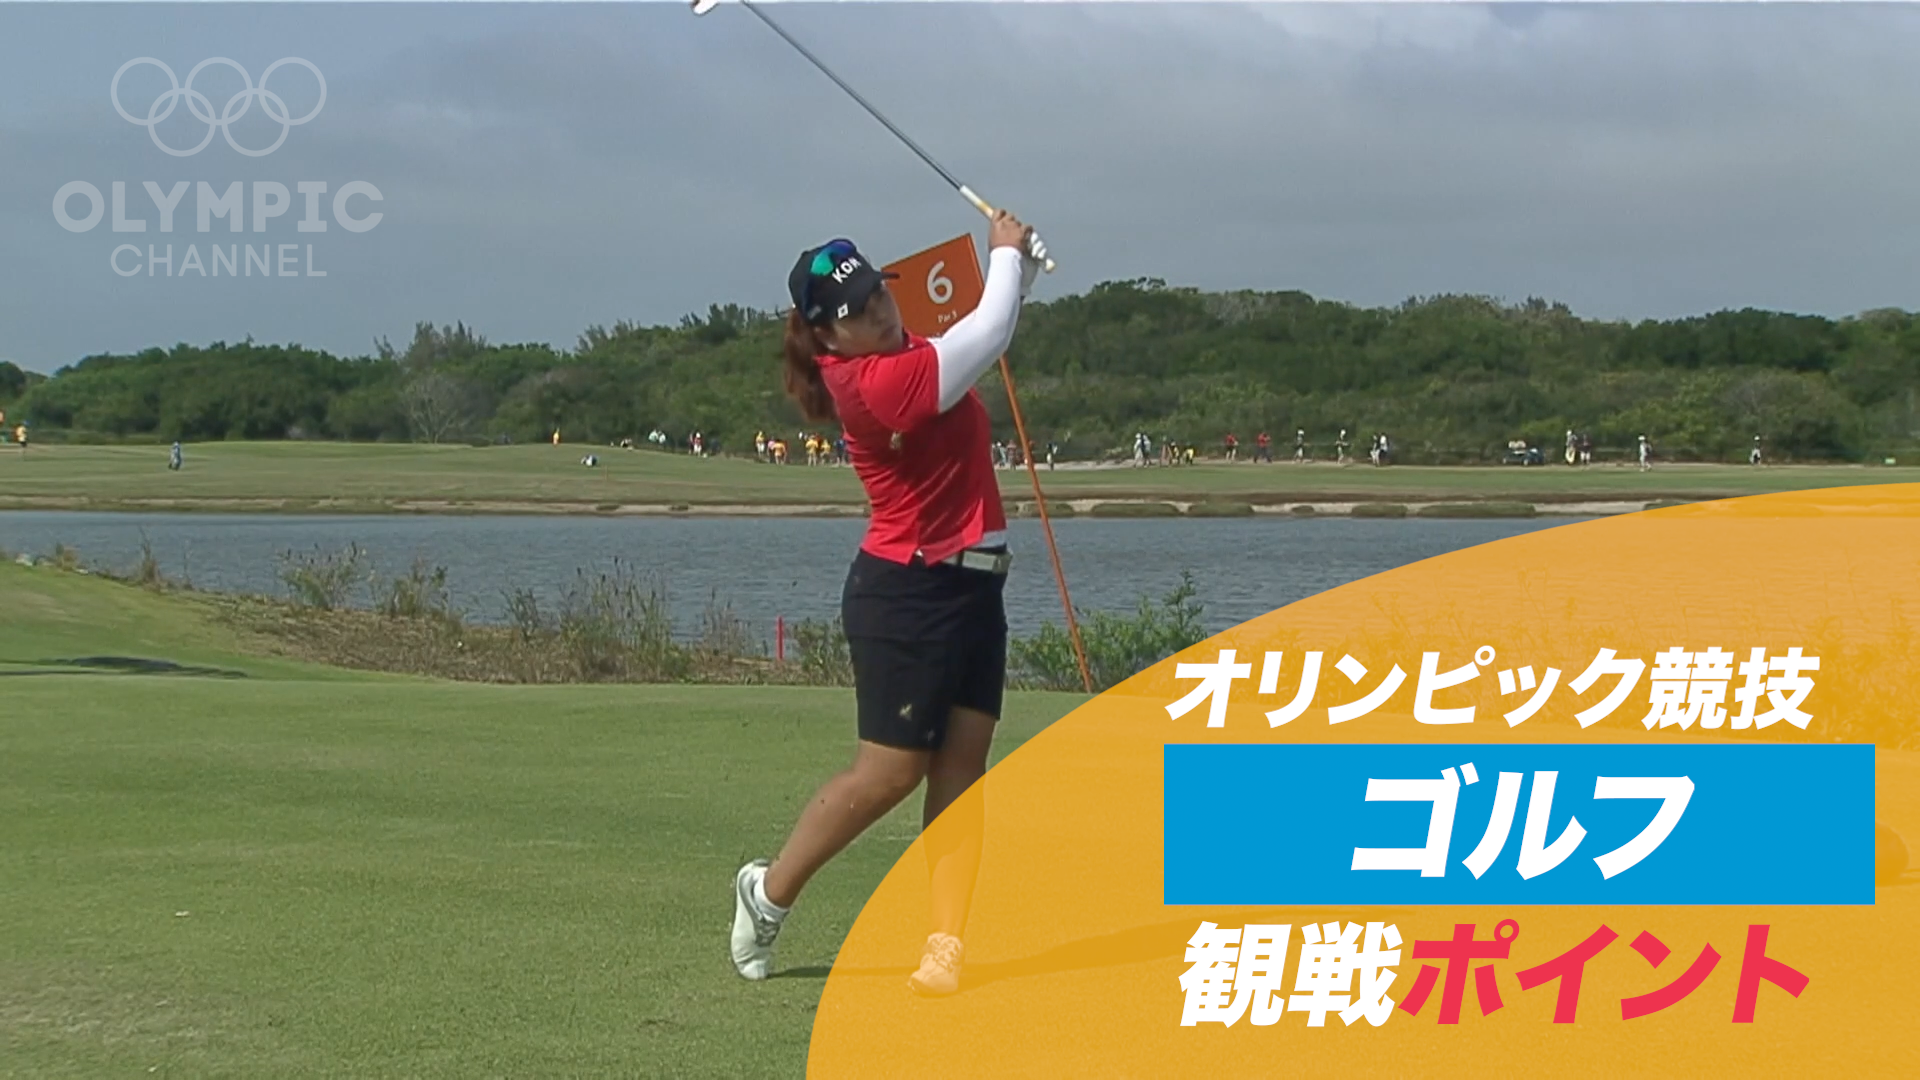 【動画】オリンピック競技 観戦ポイント ゴルフ - 東京 ...